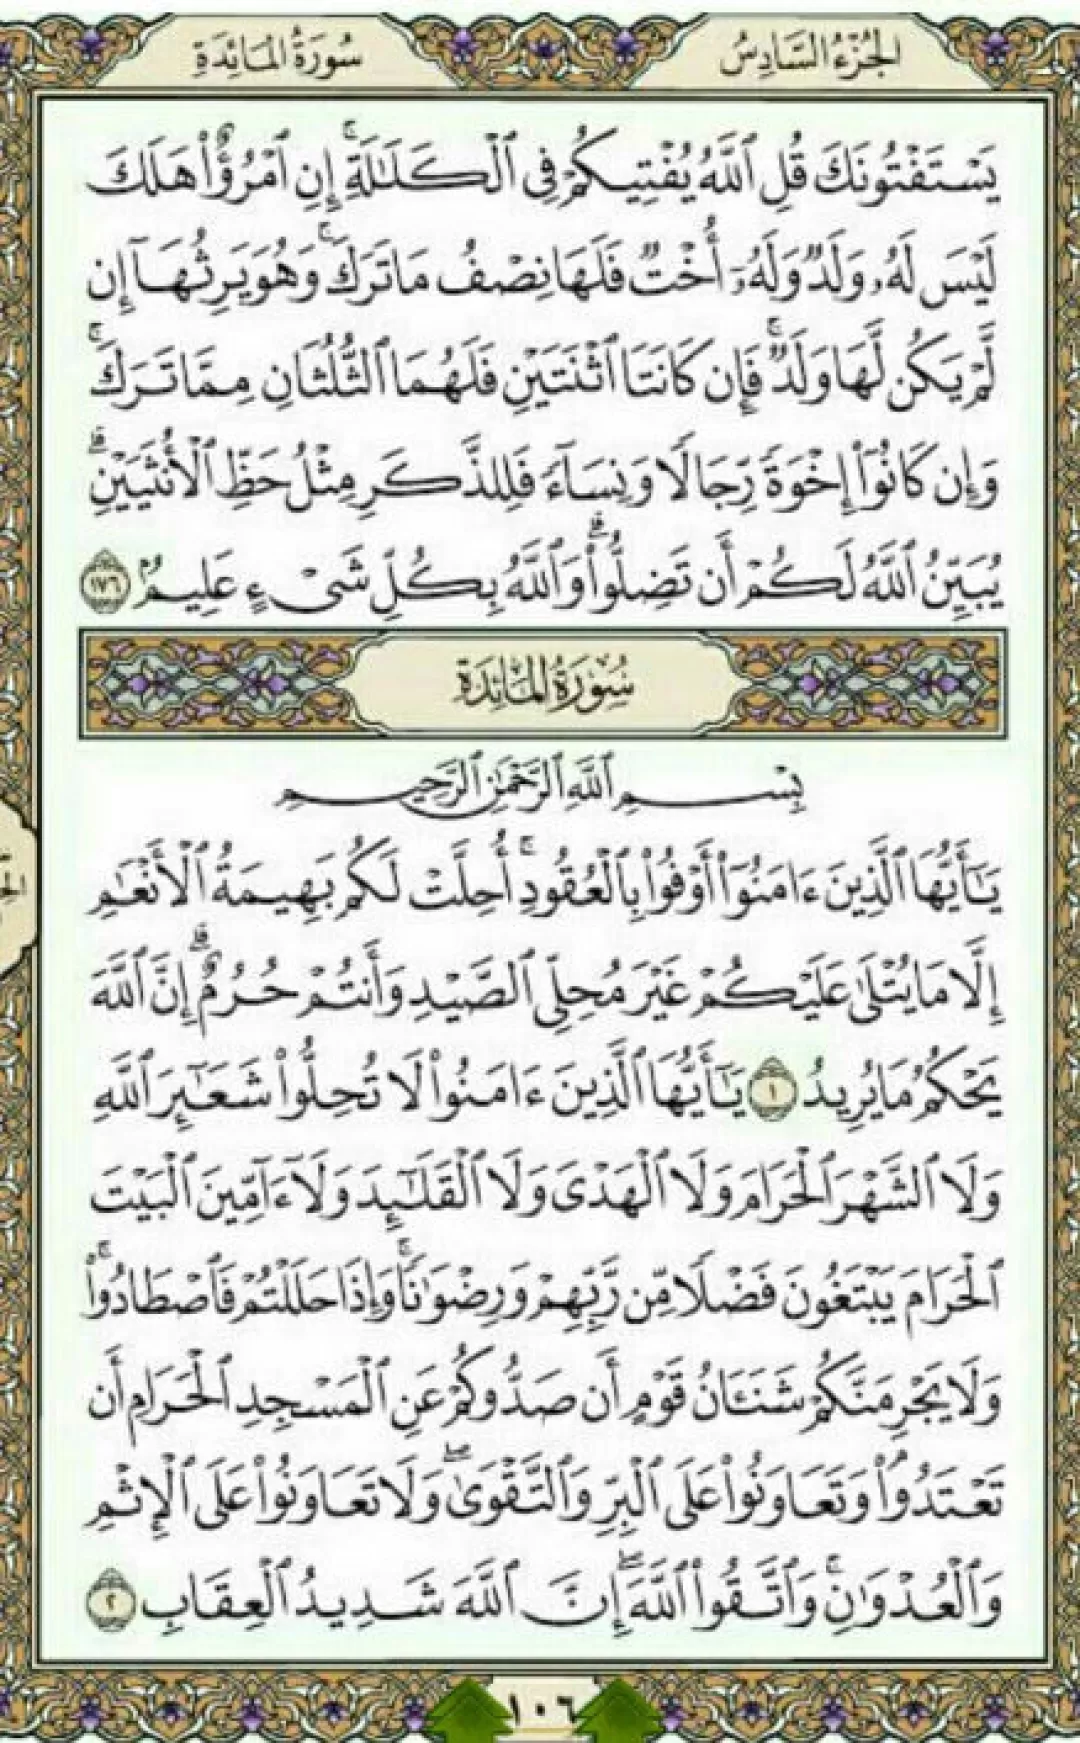 روزانه یک صفحه با آیات قرآن مجید